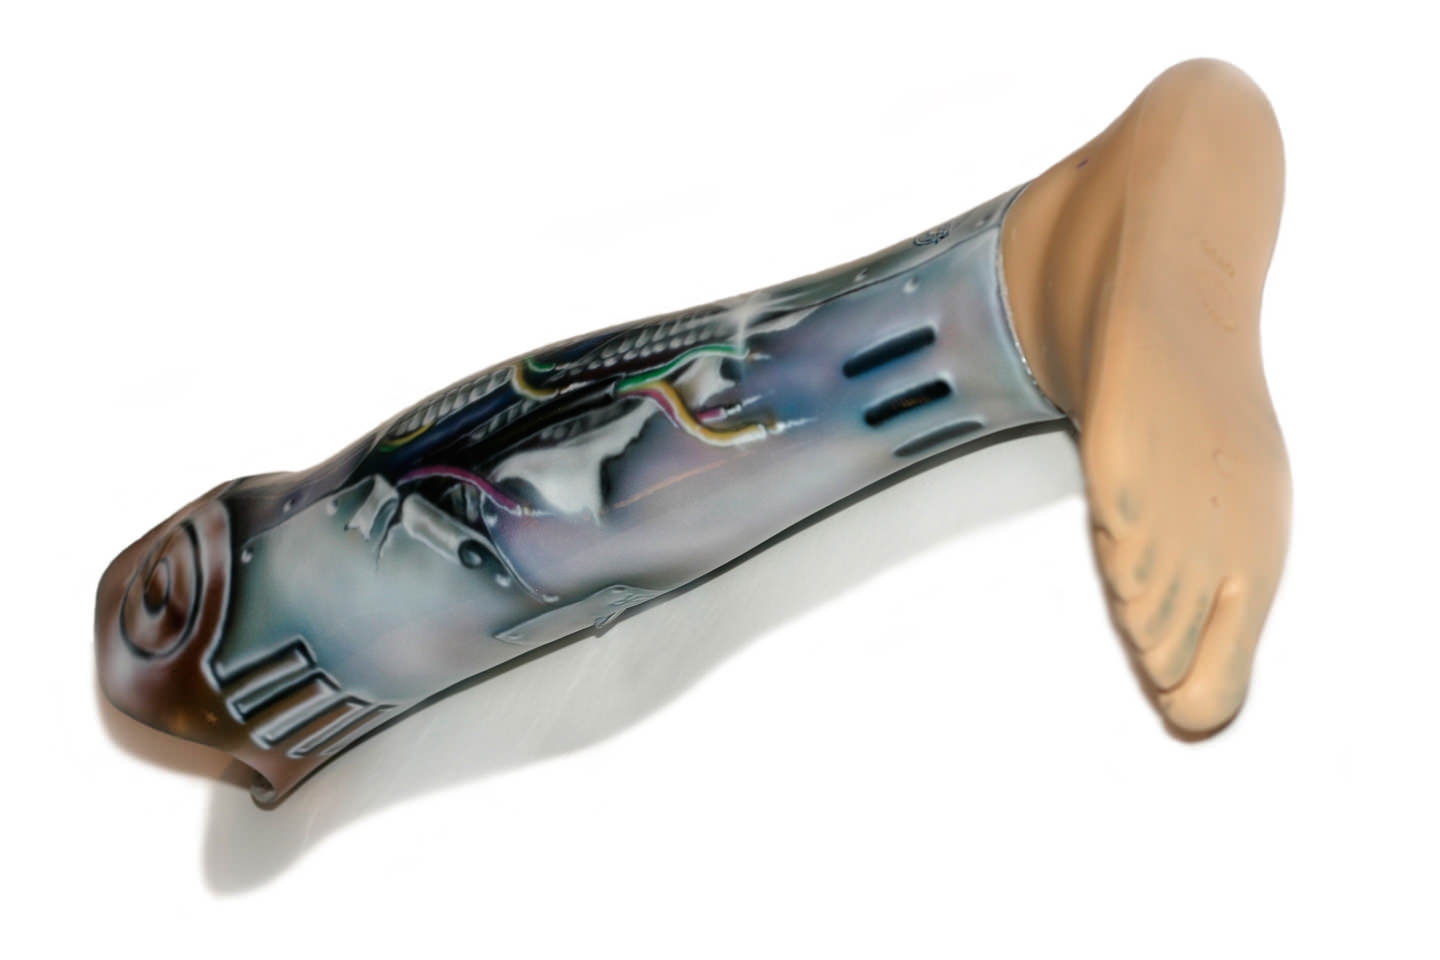 Kunstbeen prothese schildering cyborg metaal robot been